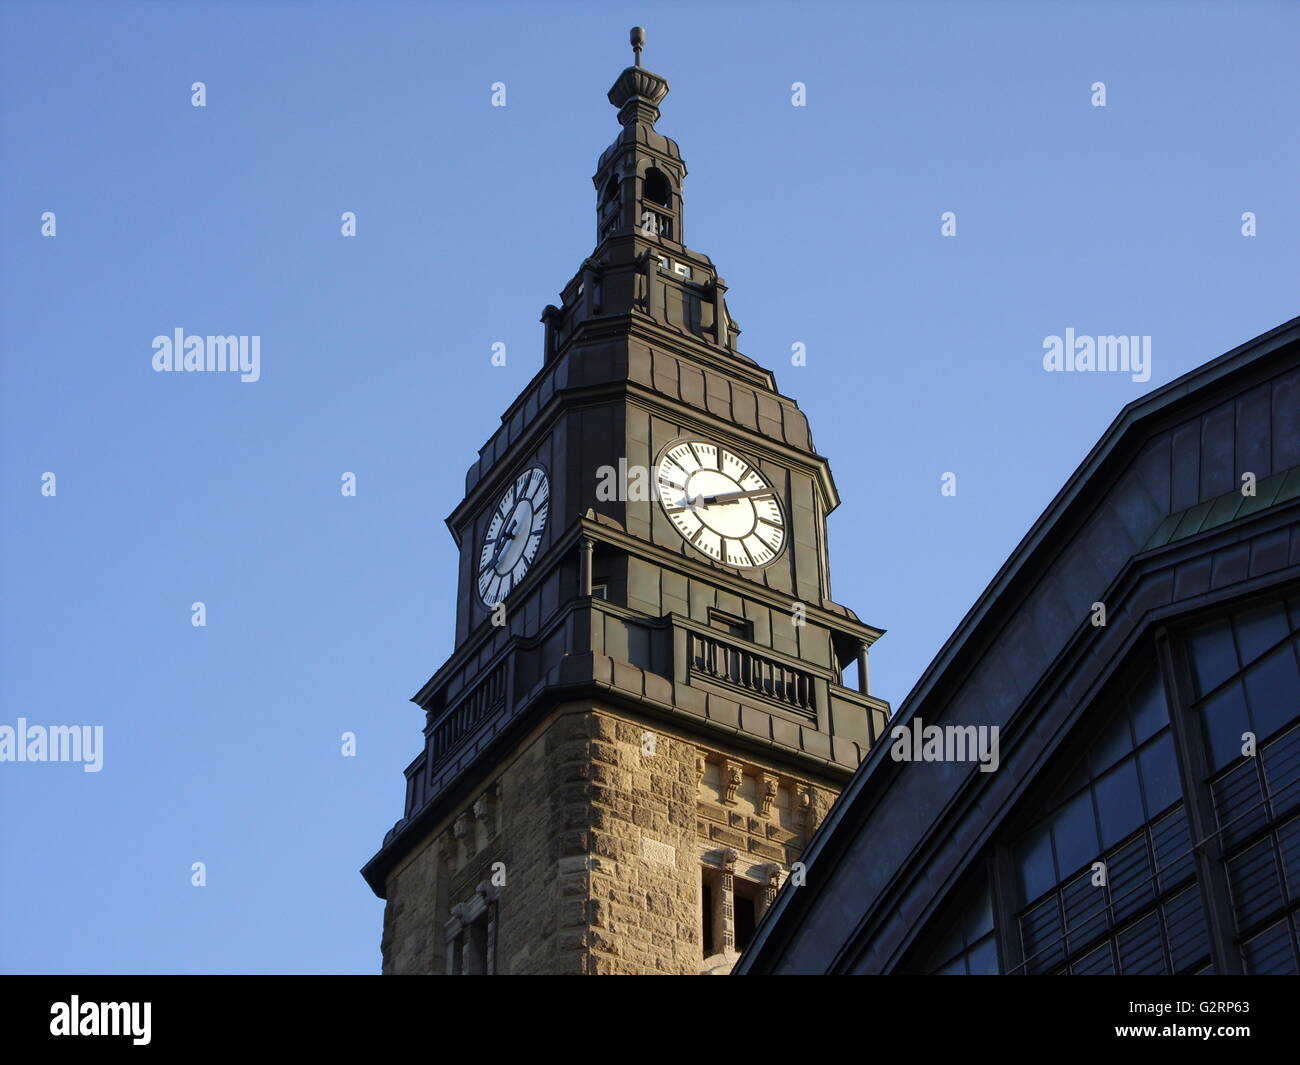 La tour de la gare centrale de Hambourg Allemagne Banque D'Images